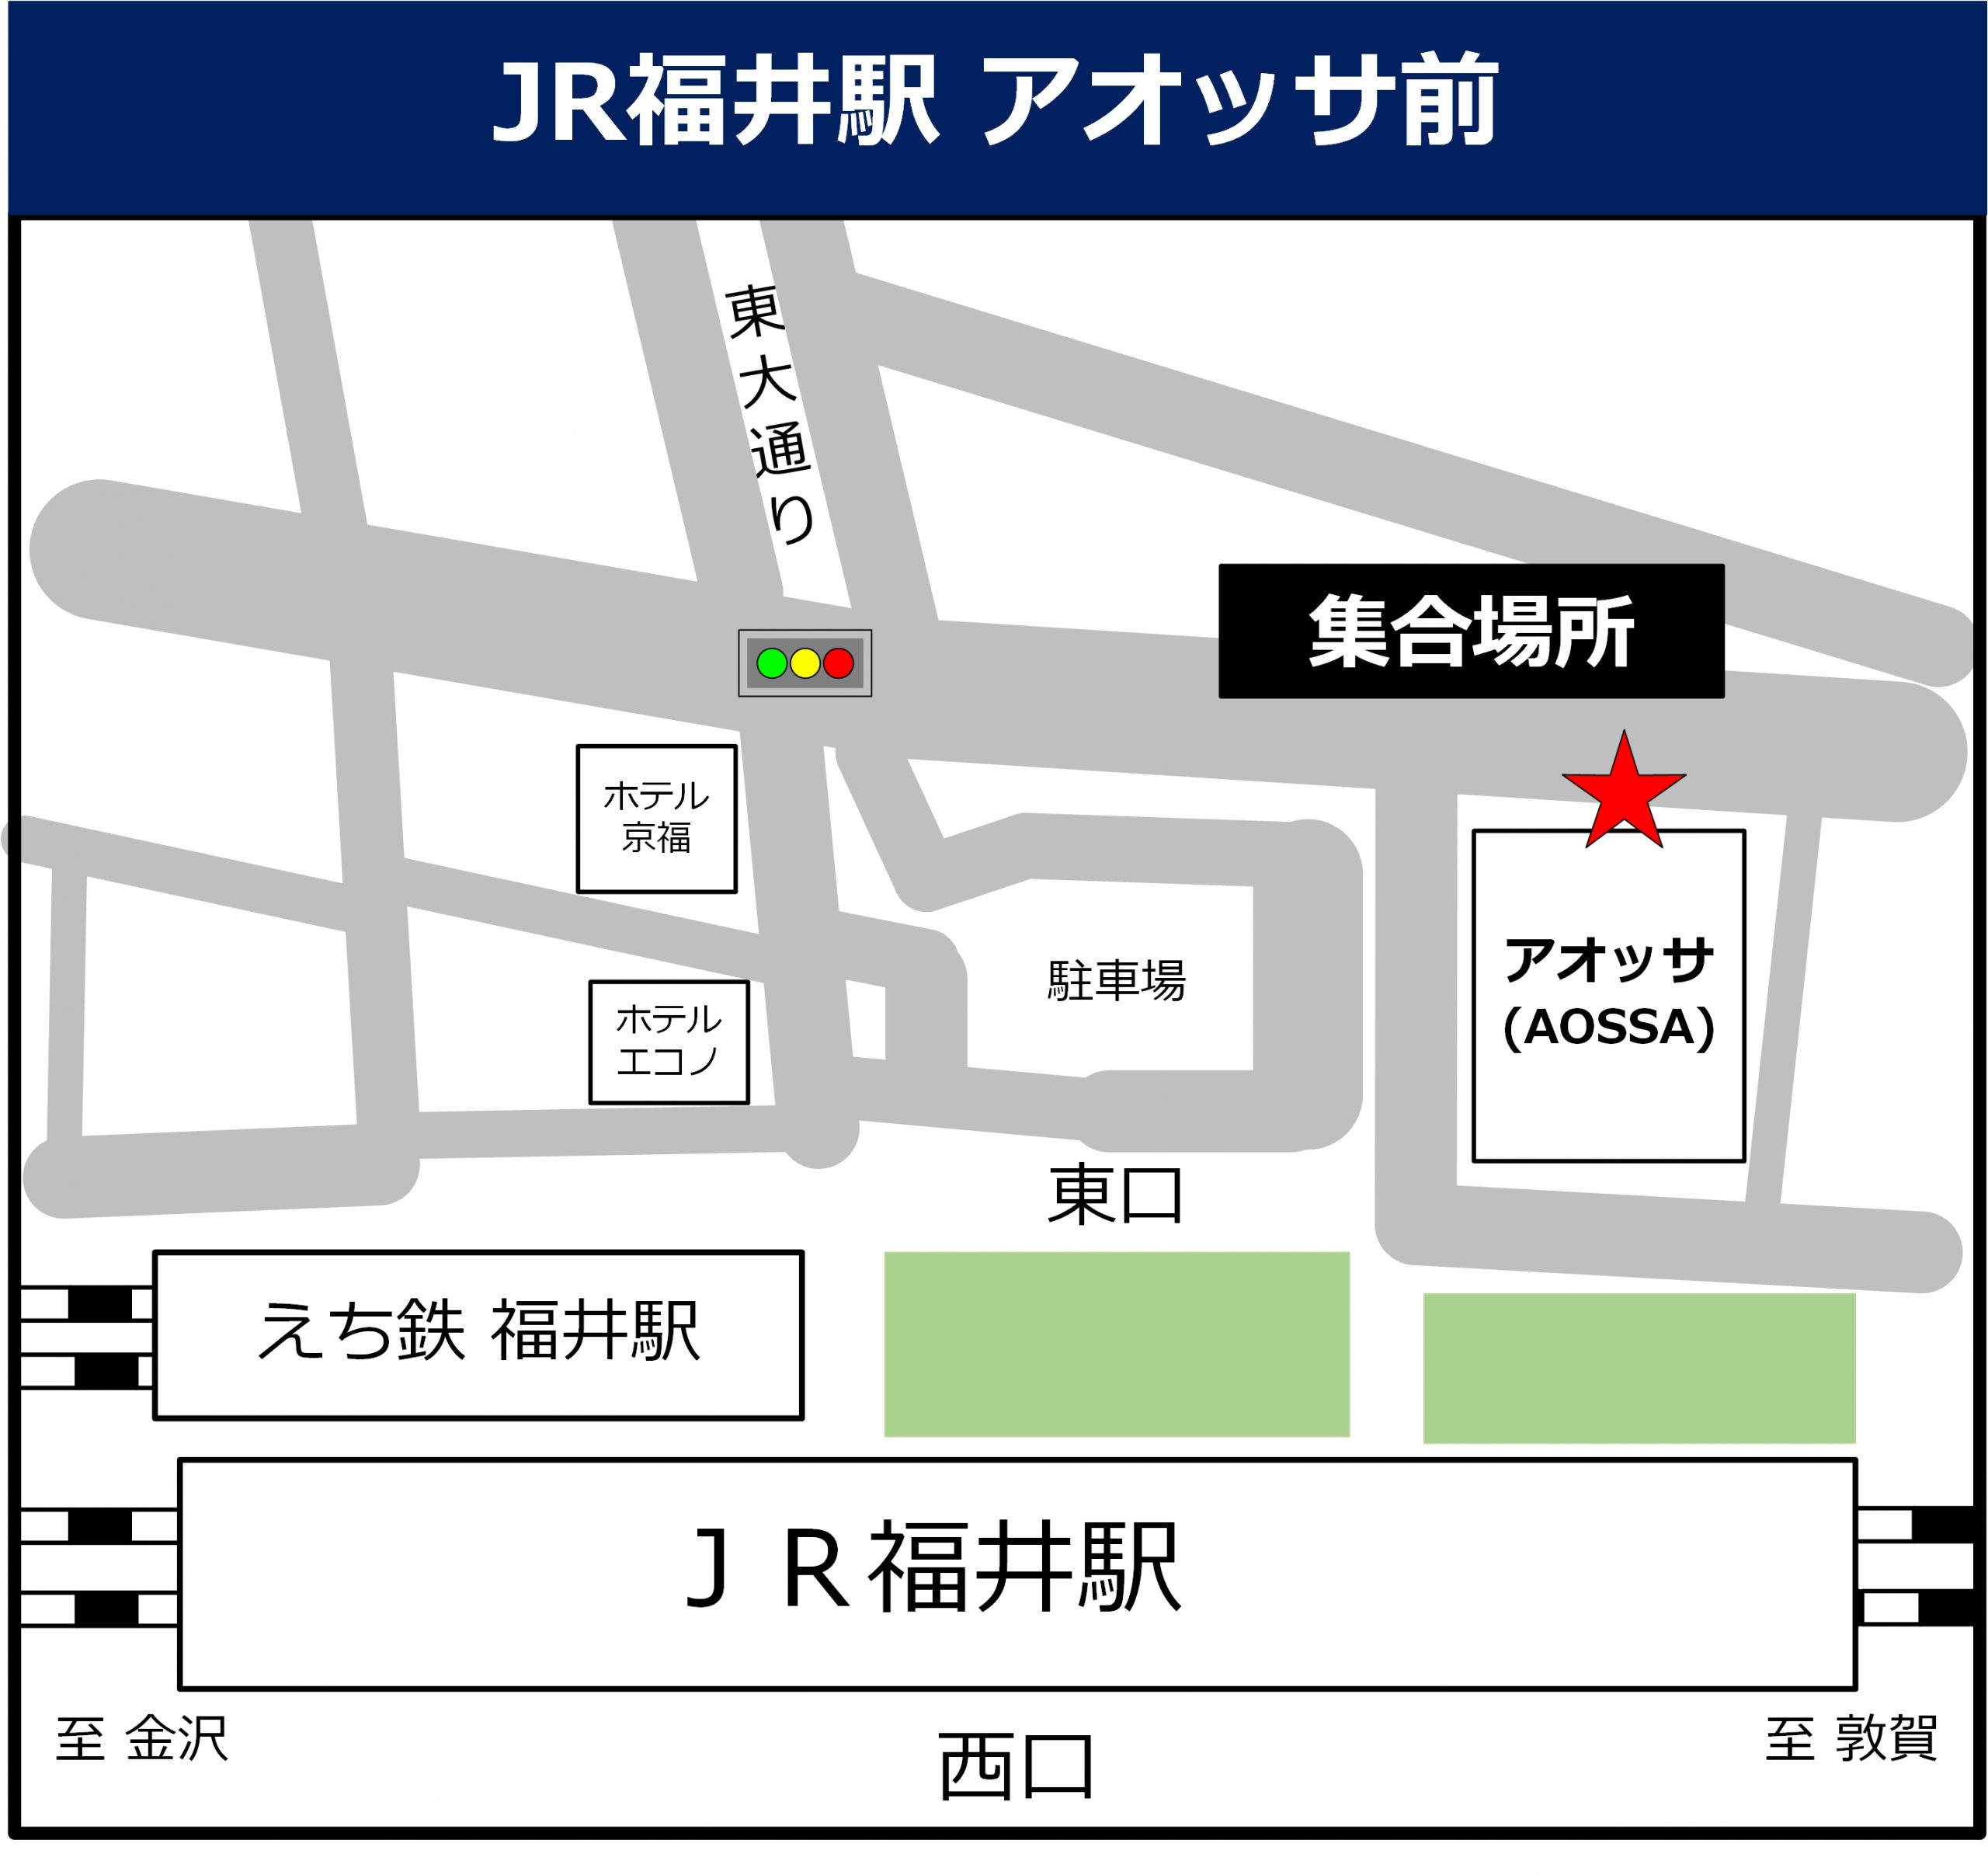 JR福井駅 アオッサ前の地図